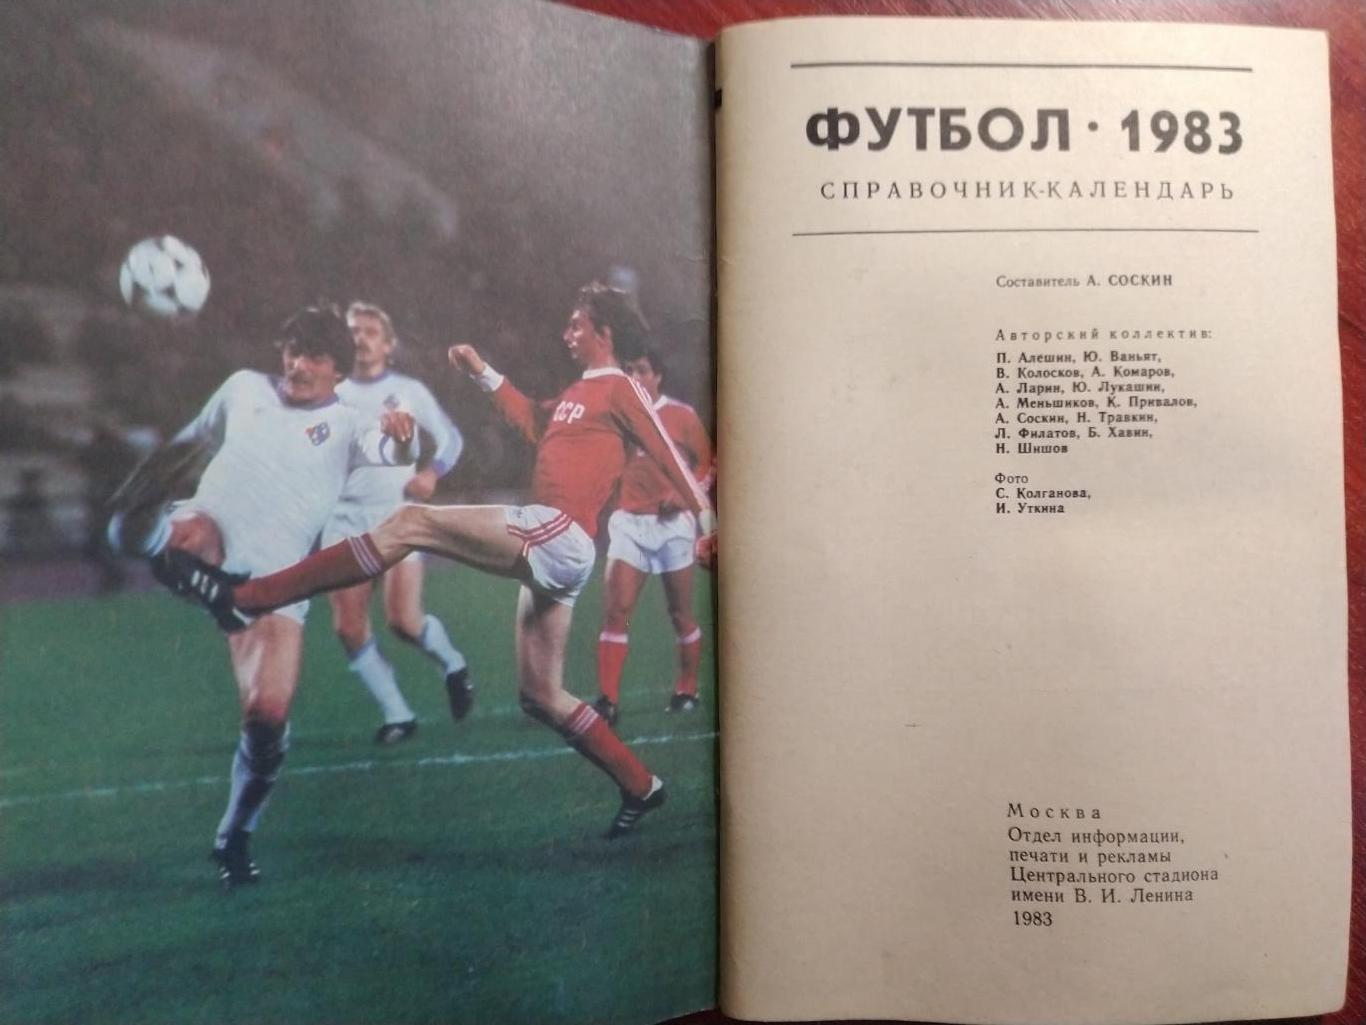 Справочник-календарь Футбол 1983Москва 1